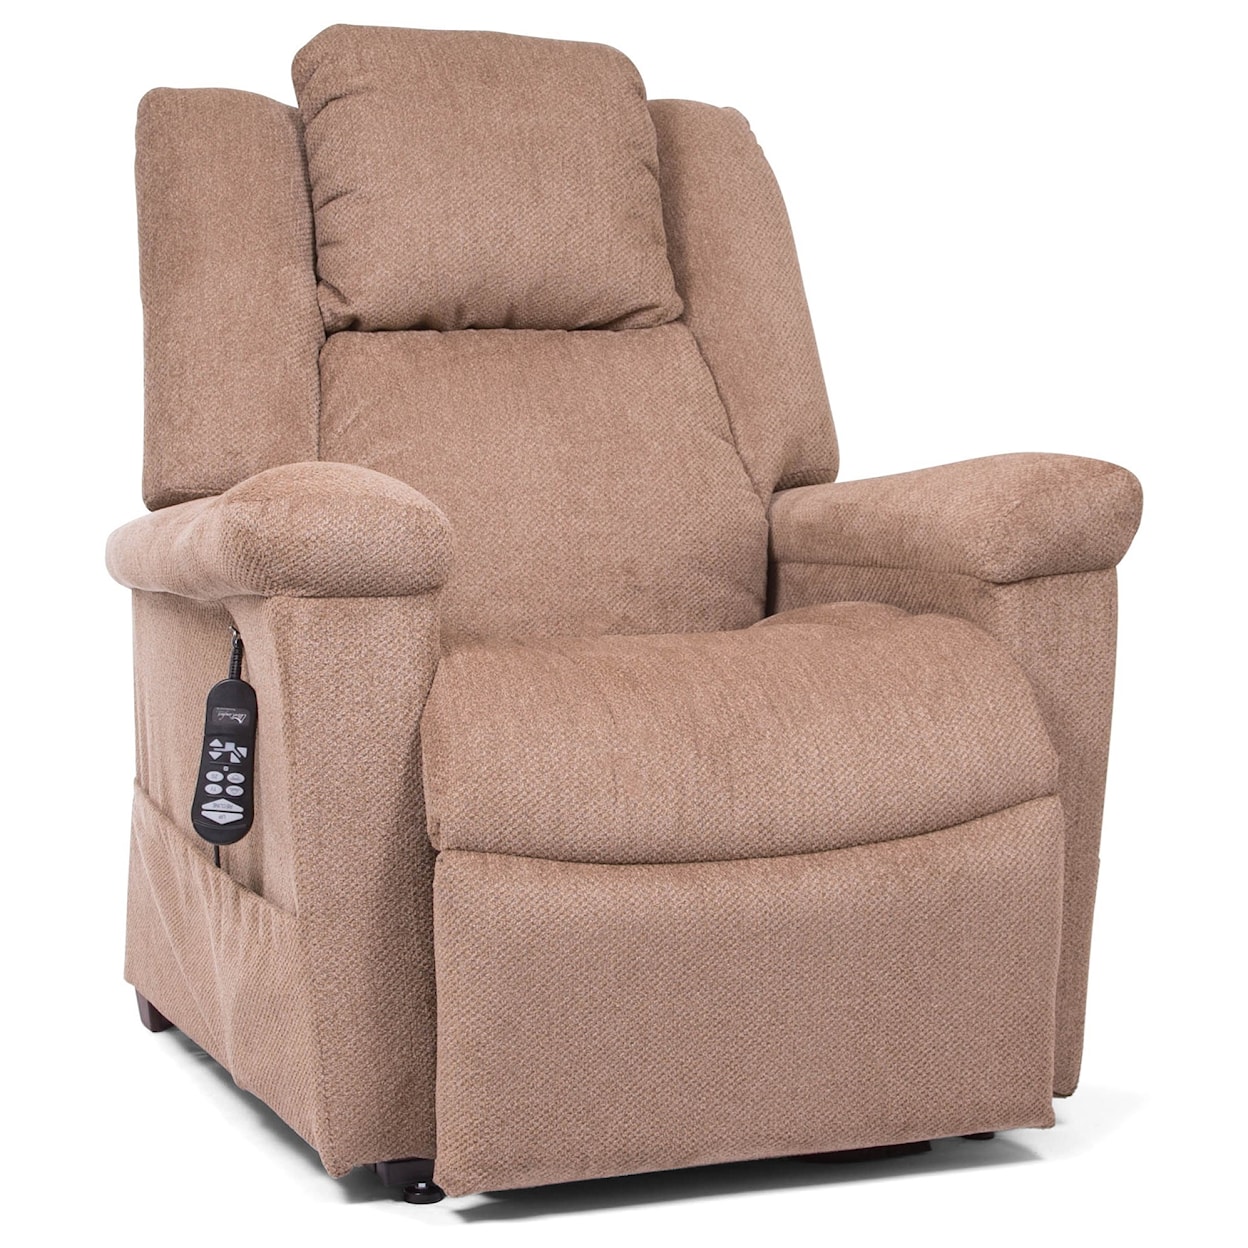 UltraComfort Estrella Power Headrest Lift Chair